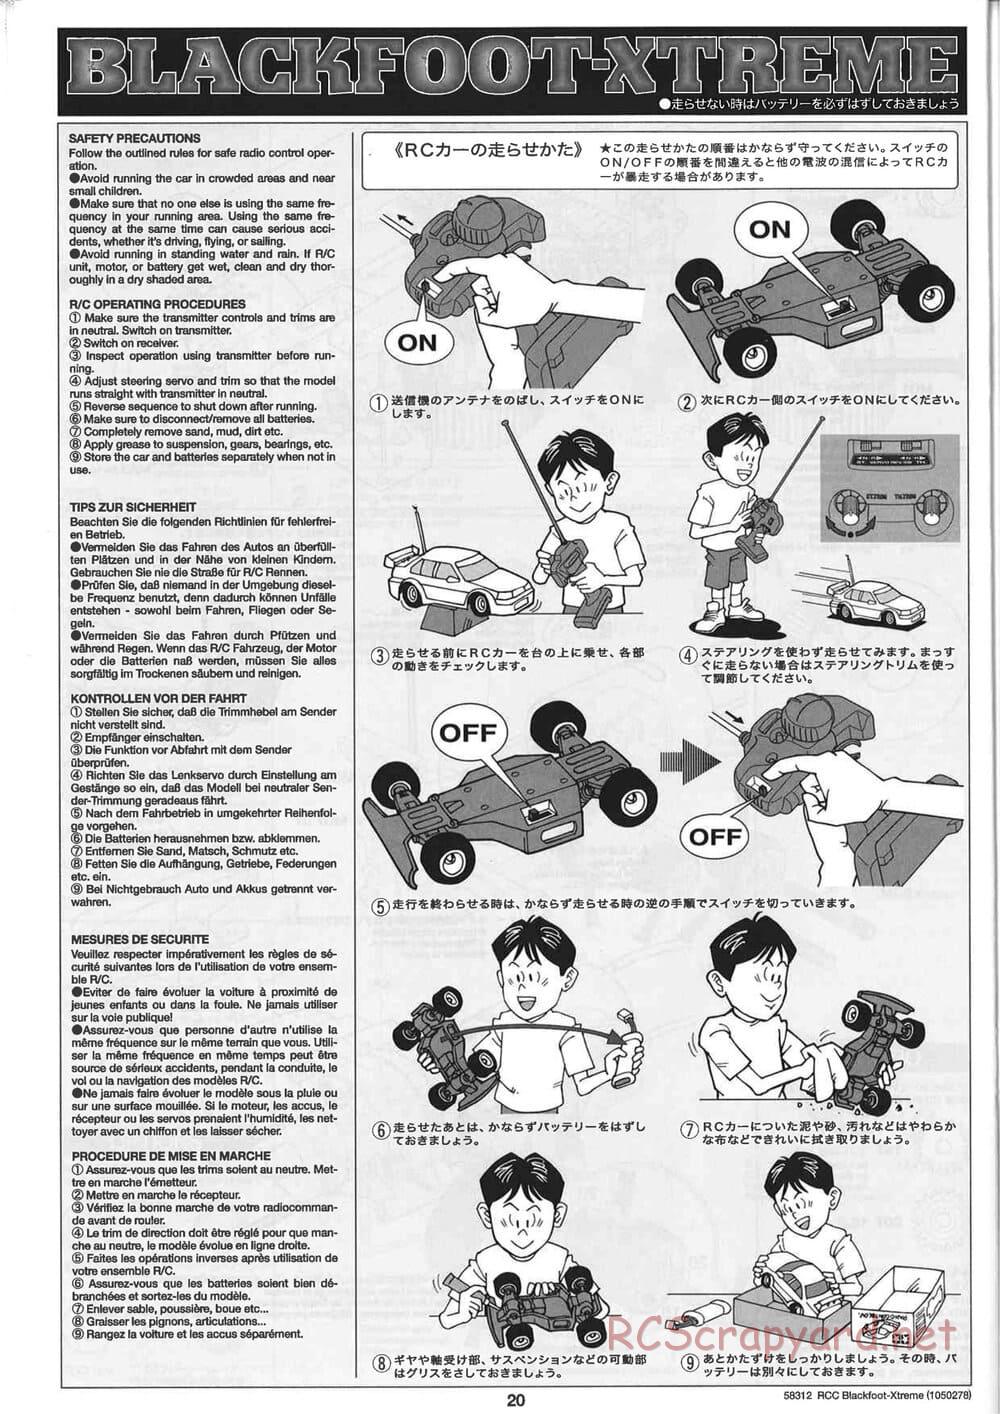 Tamiya - Blackfoot Xtreme - WT-01 Chassis - Manual - Page 20